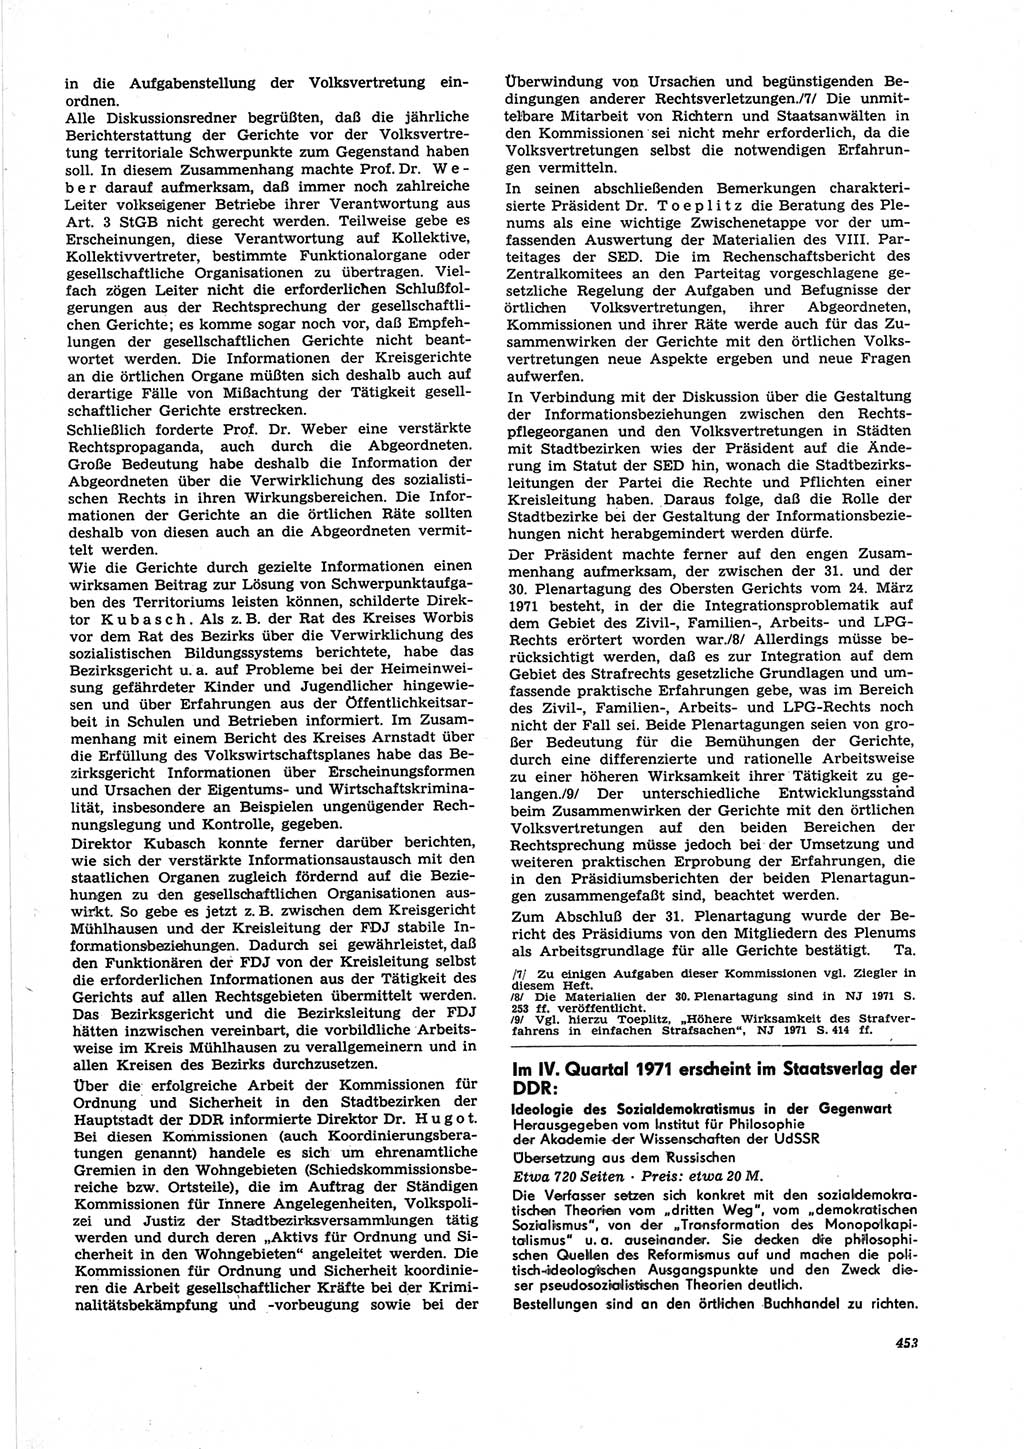 Neue Justiz (NJ), Zeitschrift für Recht und Rechtswissenschaft [Deutsche Demokratische Republik (DDR)], 25. Jahrgang 1971, Seite 453 (NJ DDR 1971, S. 453)